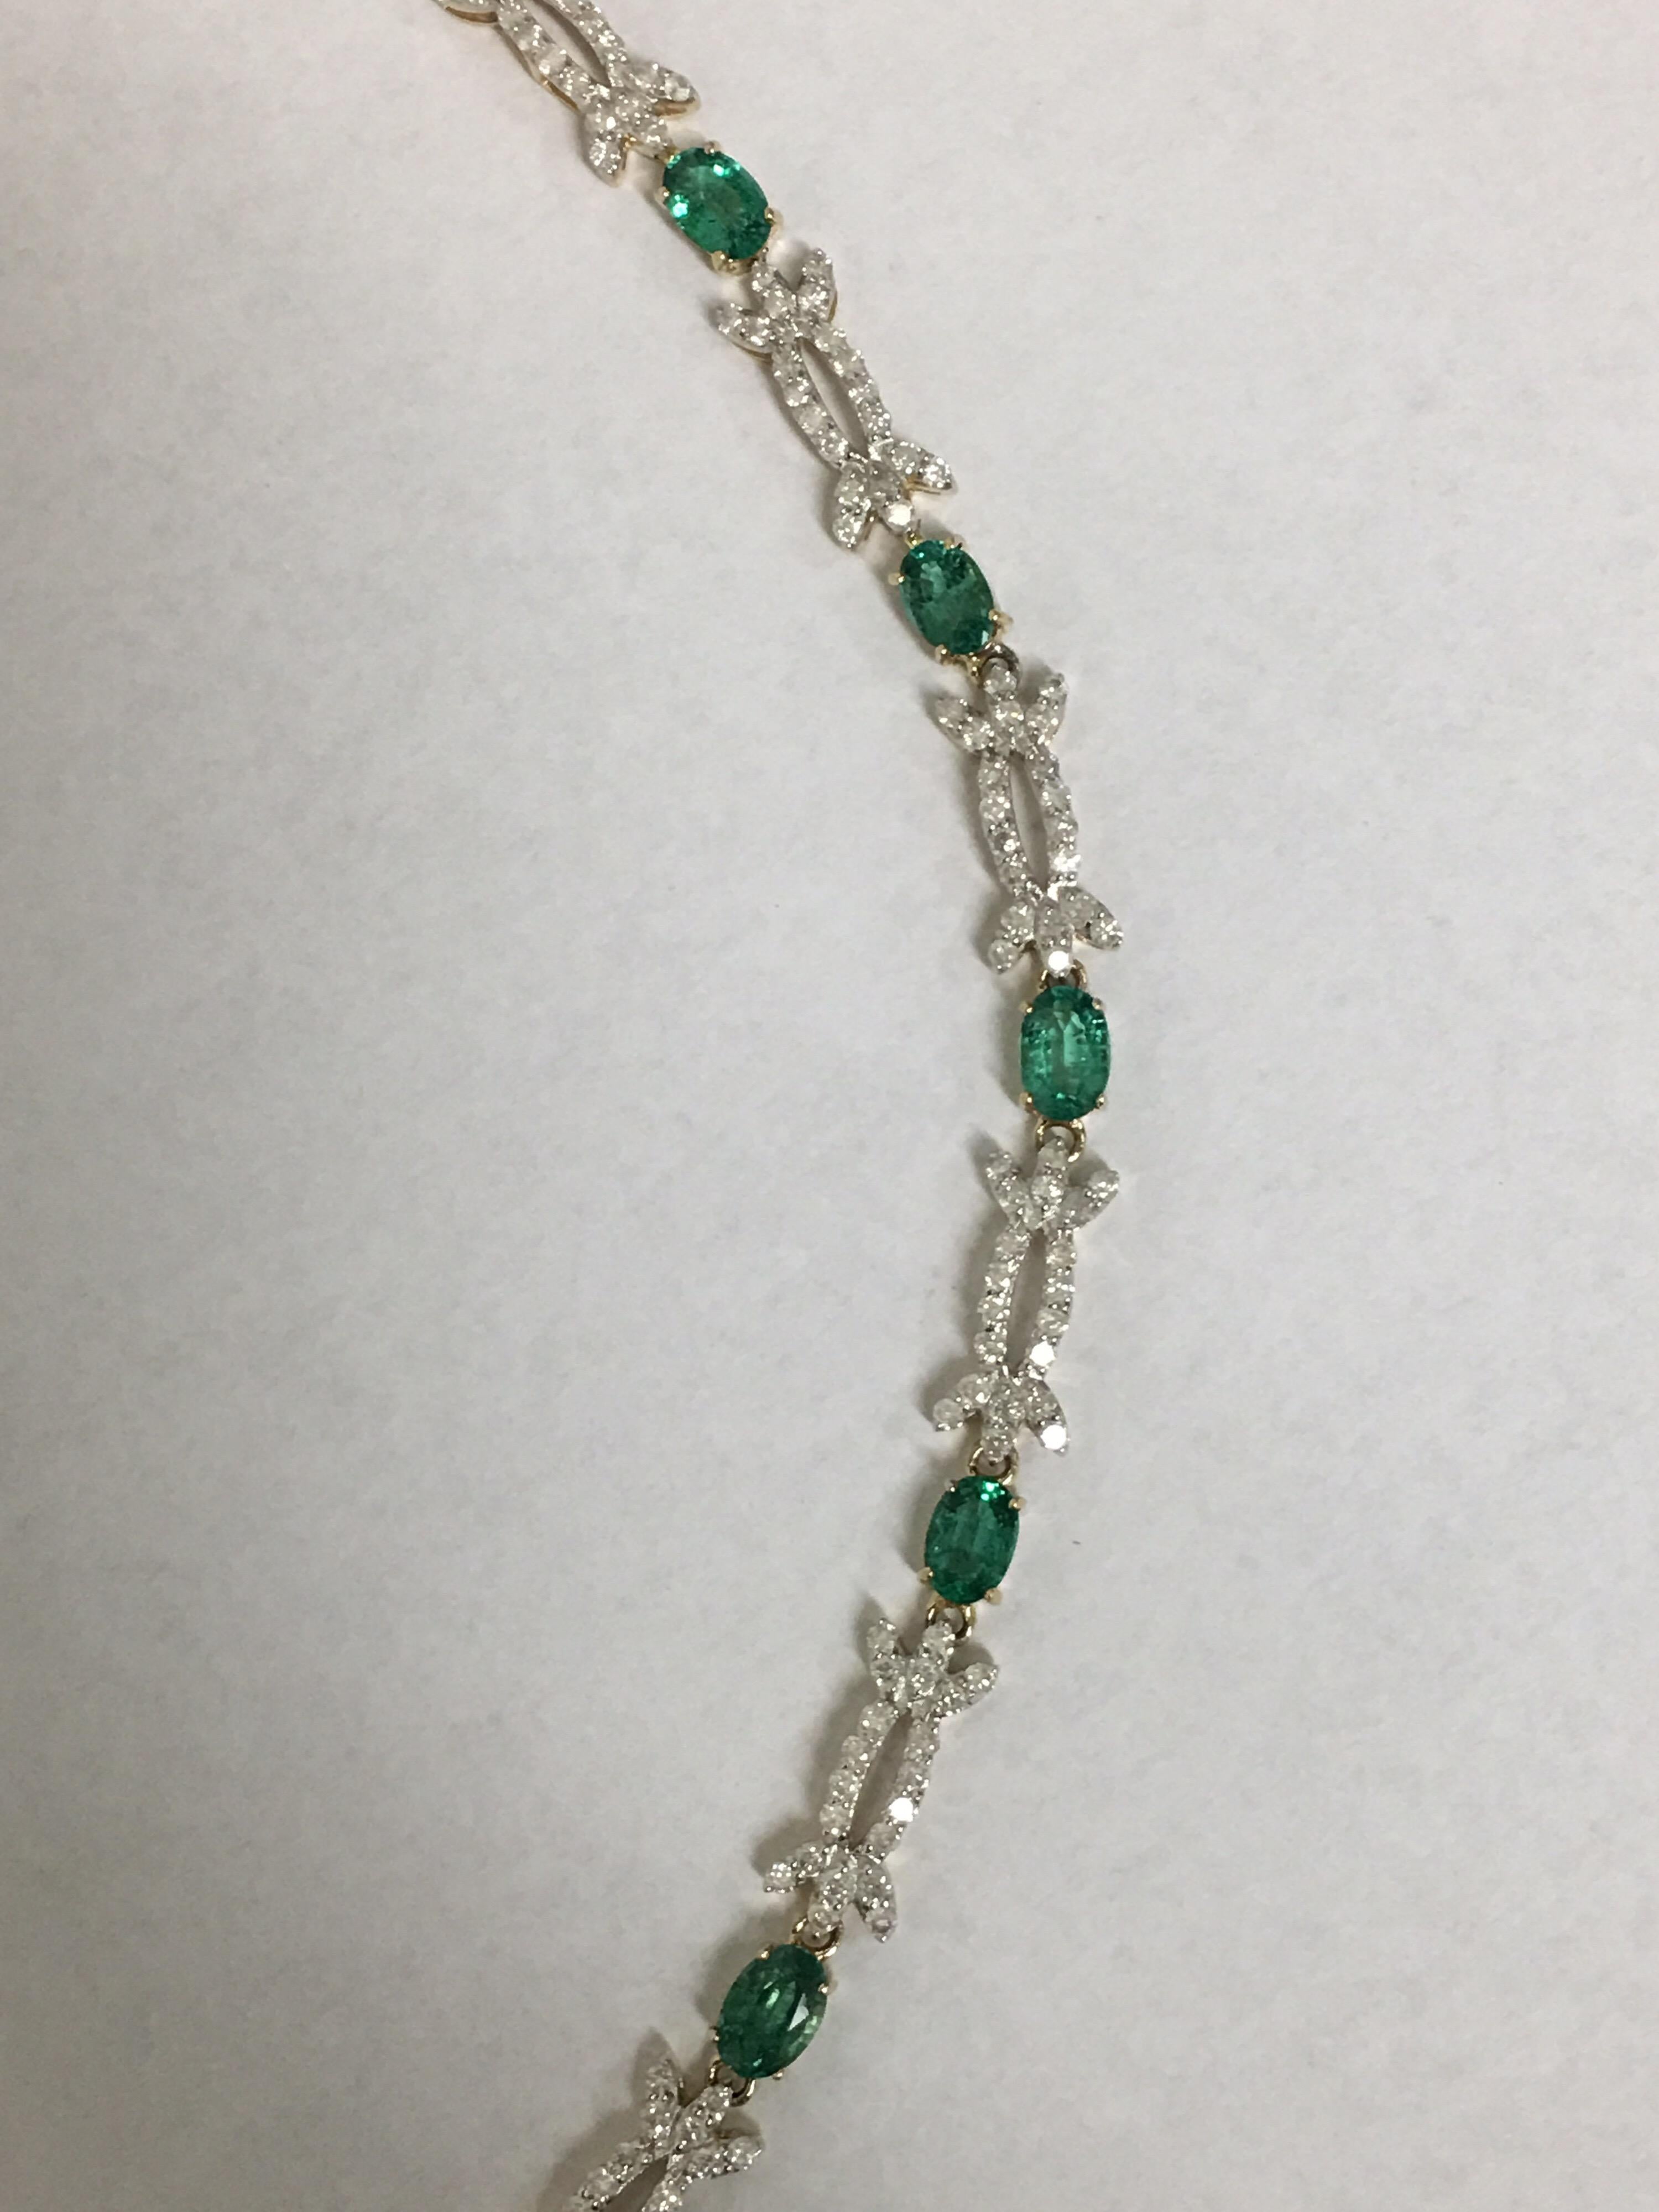 Oval Cut AIG Certified Emerald Diamond Necklace